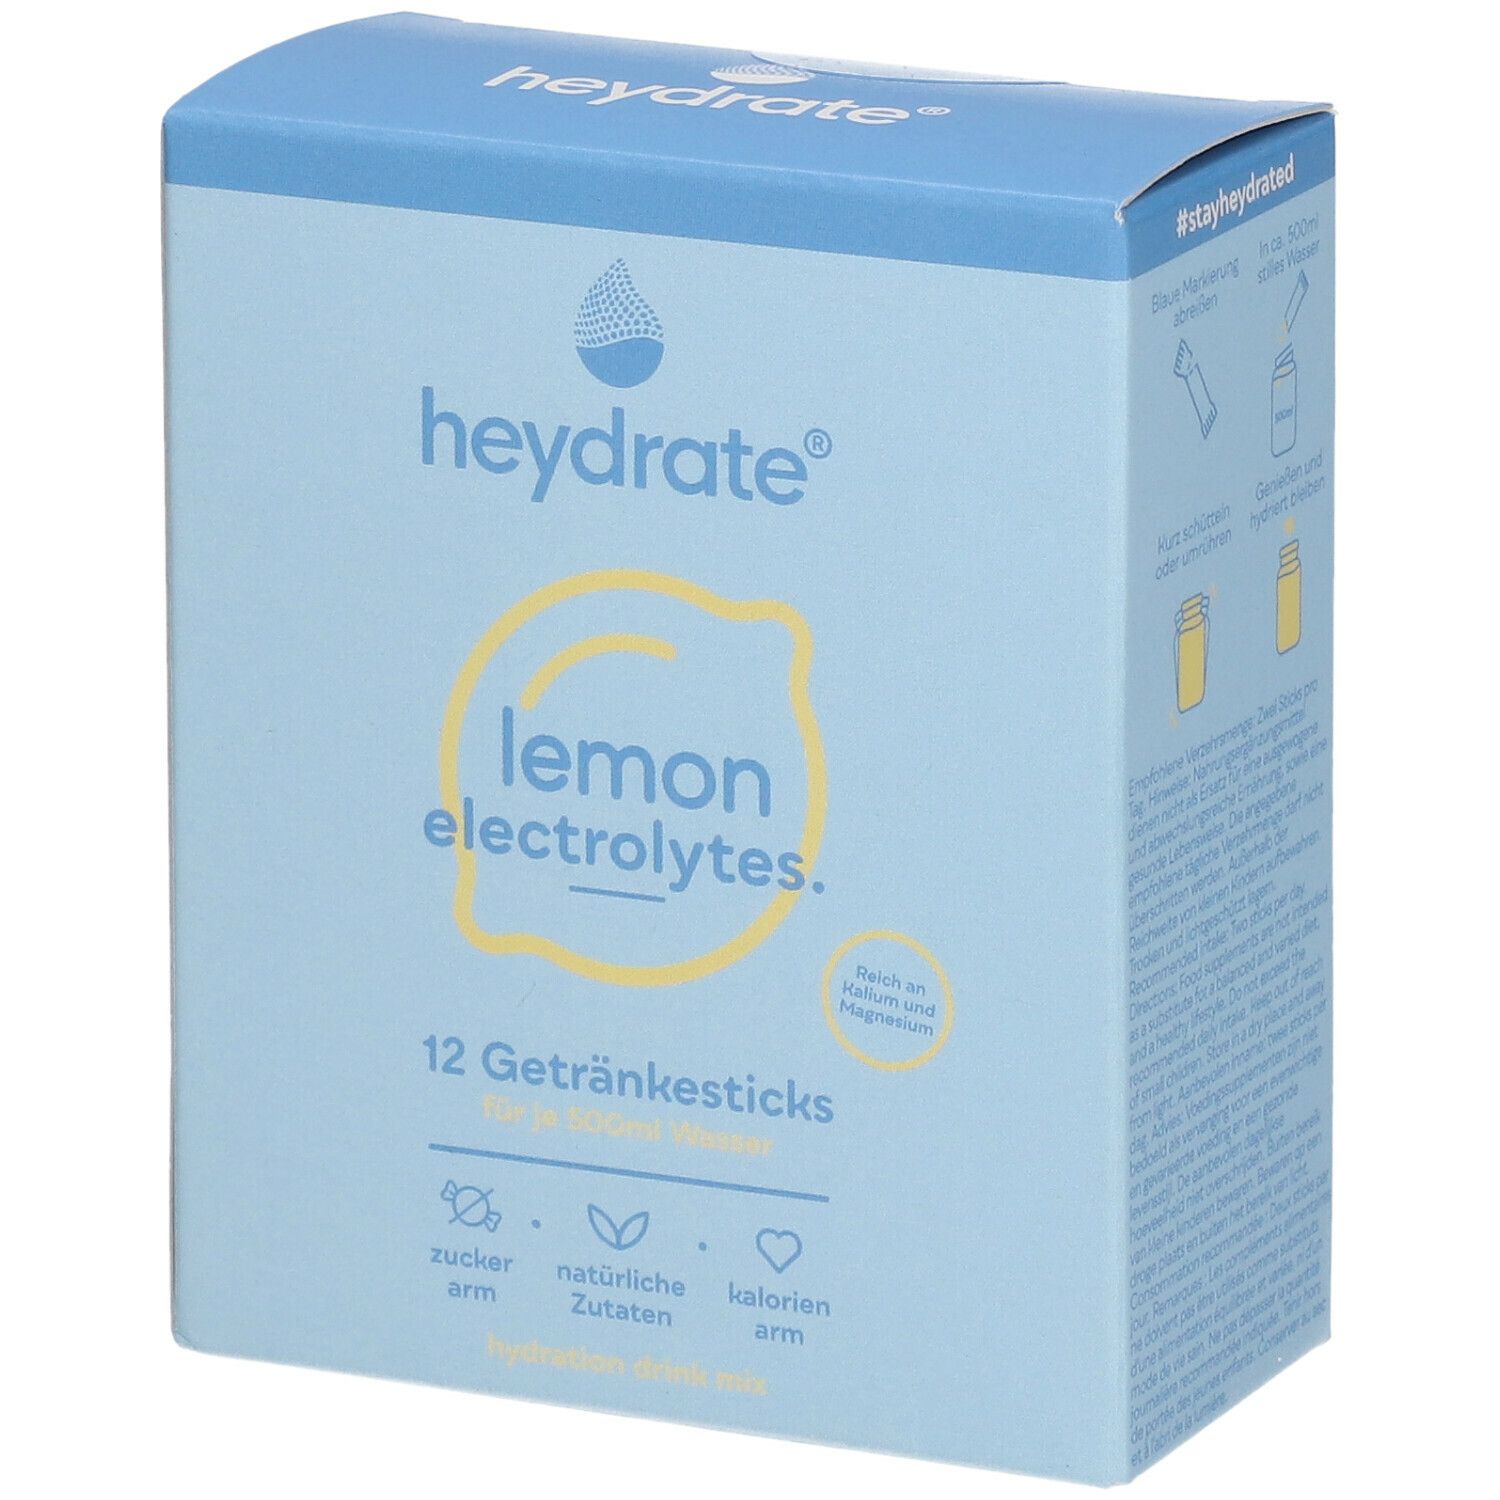 Image of heydrate® lemon electrolytes